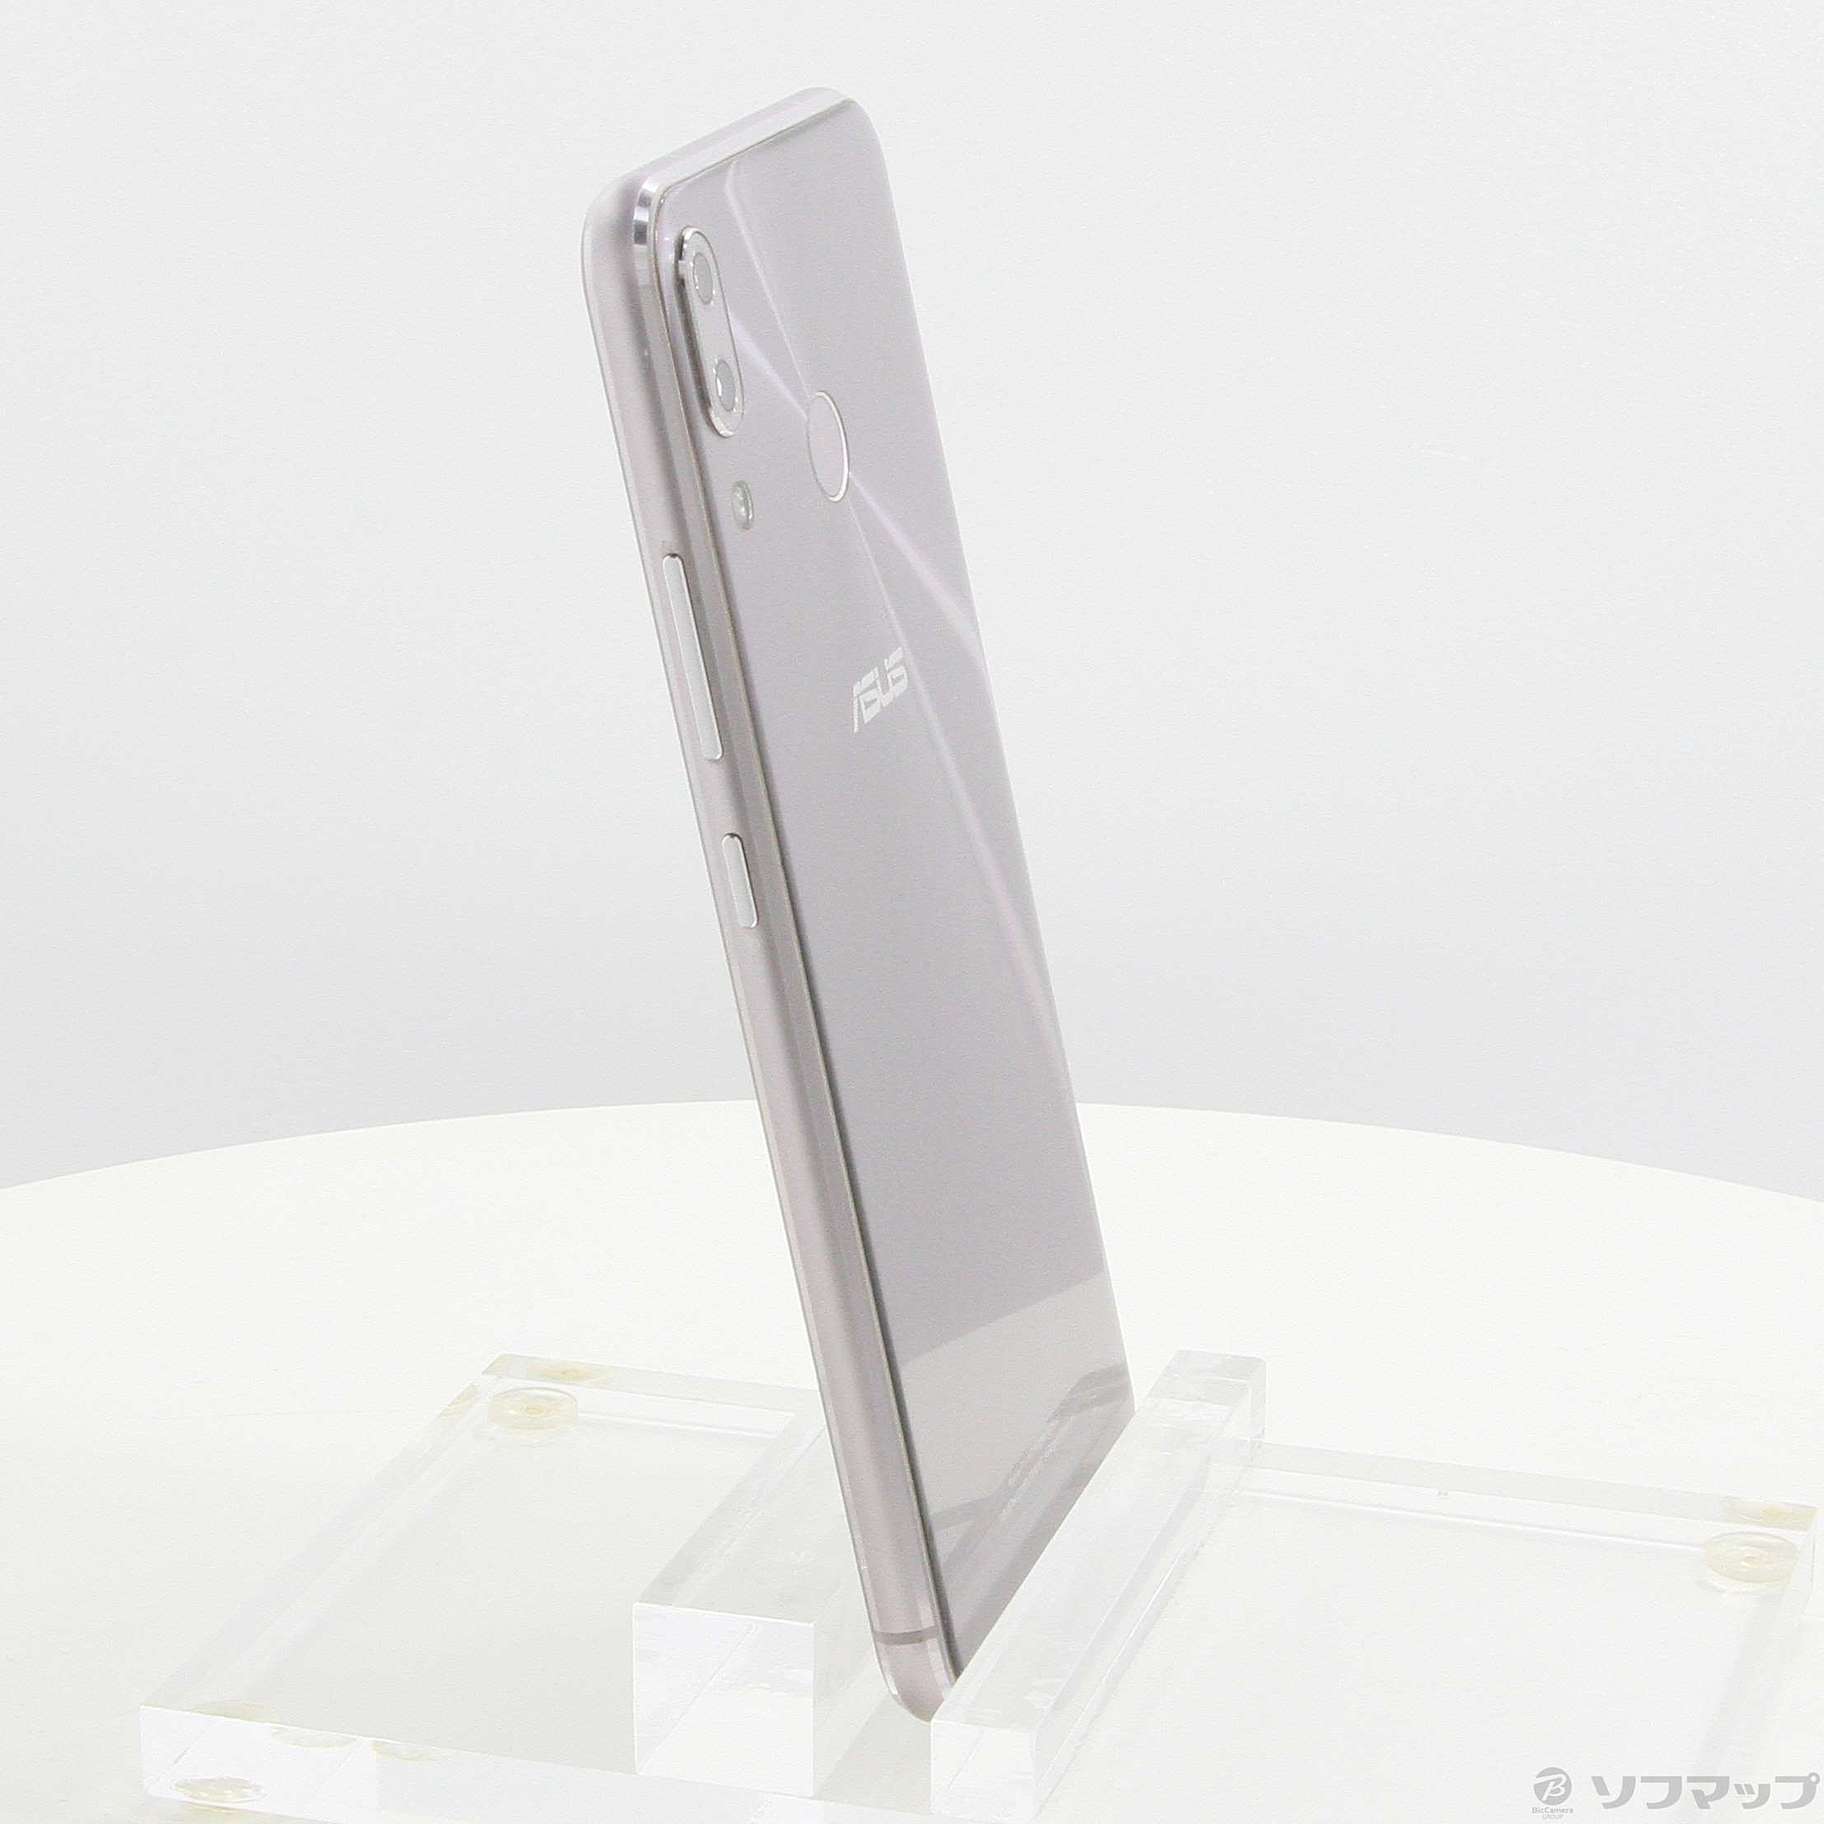 中古】ZenFone 5Z 128GB スペースシルバー ZS620KL-SL128S6 SIMフリー